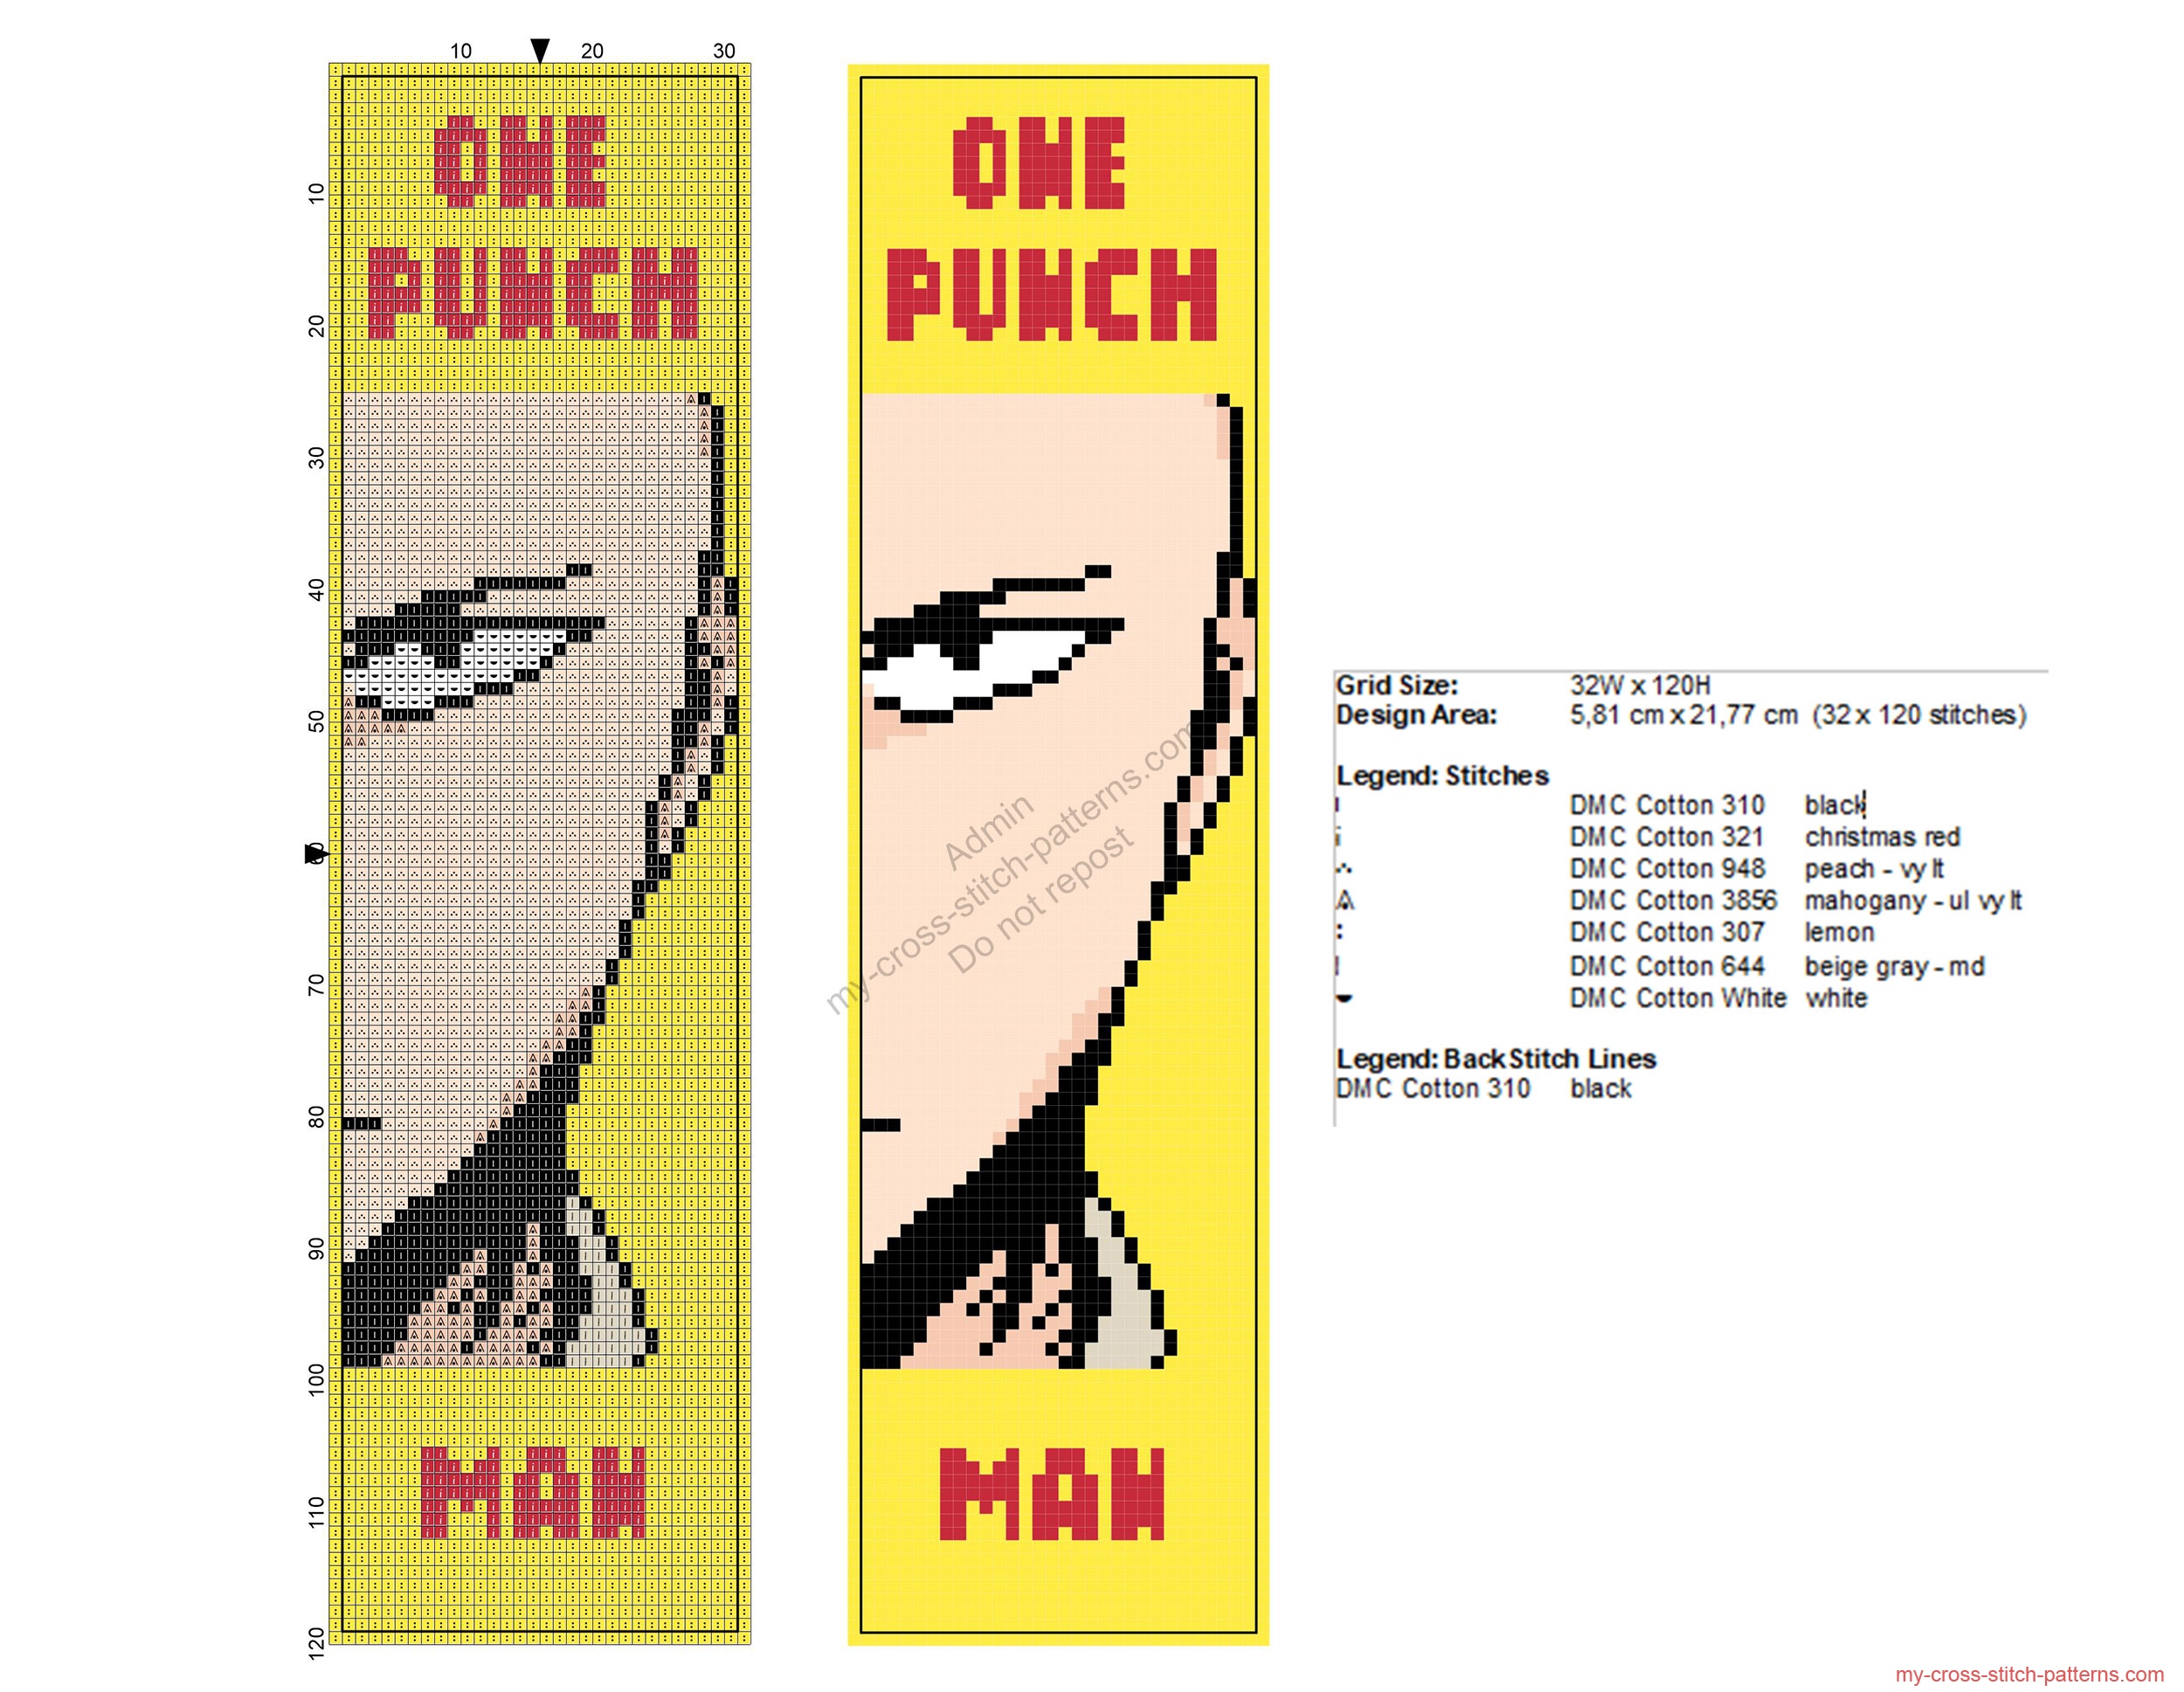 saitama_one_punch_man_free_cross_stitch_pattern_bookmark_32x120